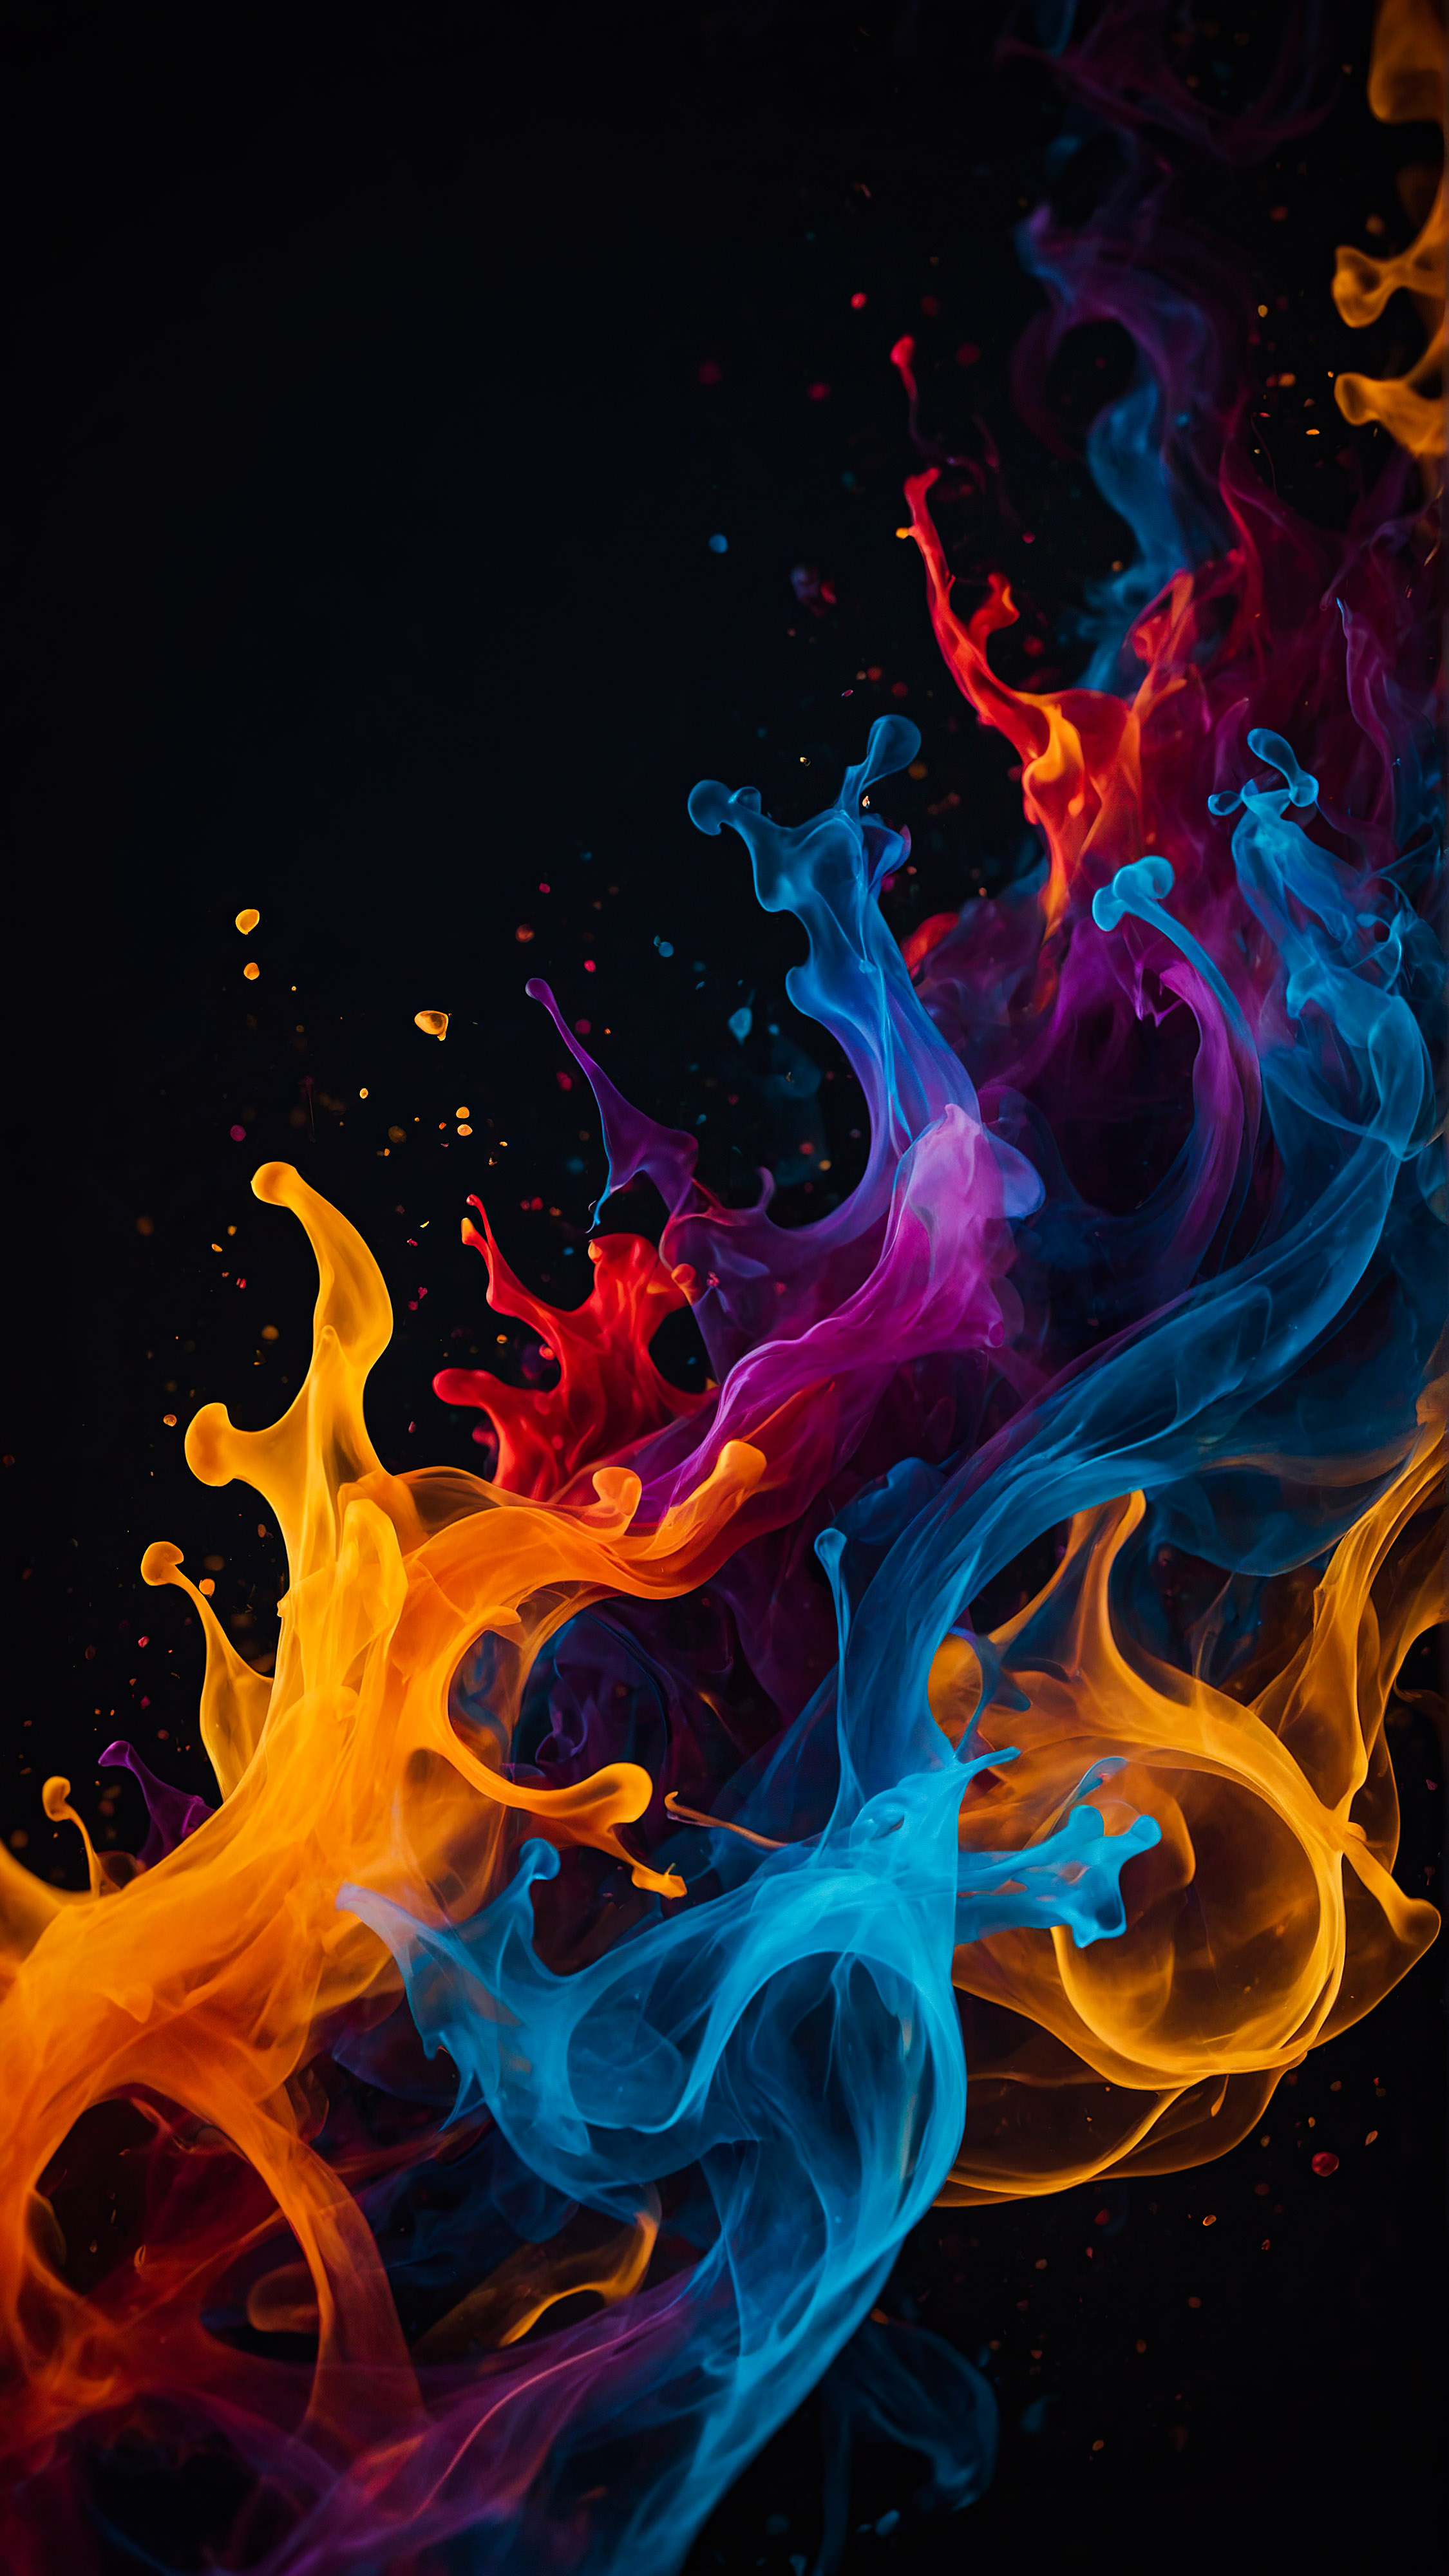 Obtenez un sens du mouvement et de l'énergie avec notre beau fond d'écran noir pour iPhone en 4K, présentant des formes abstraites entrelacées qui ressemblent à des flammes colorées sur un arrière-plan sombre. 